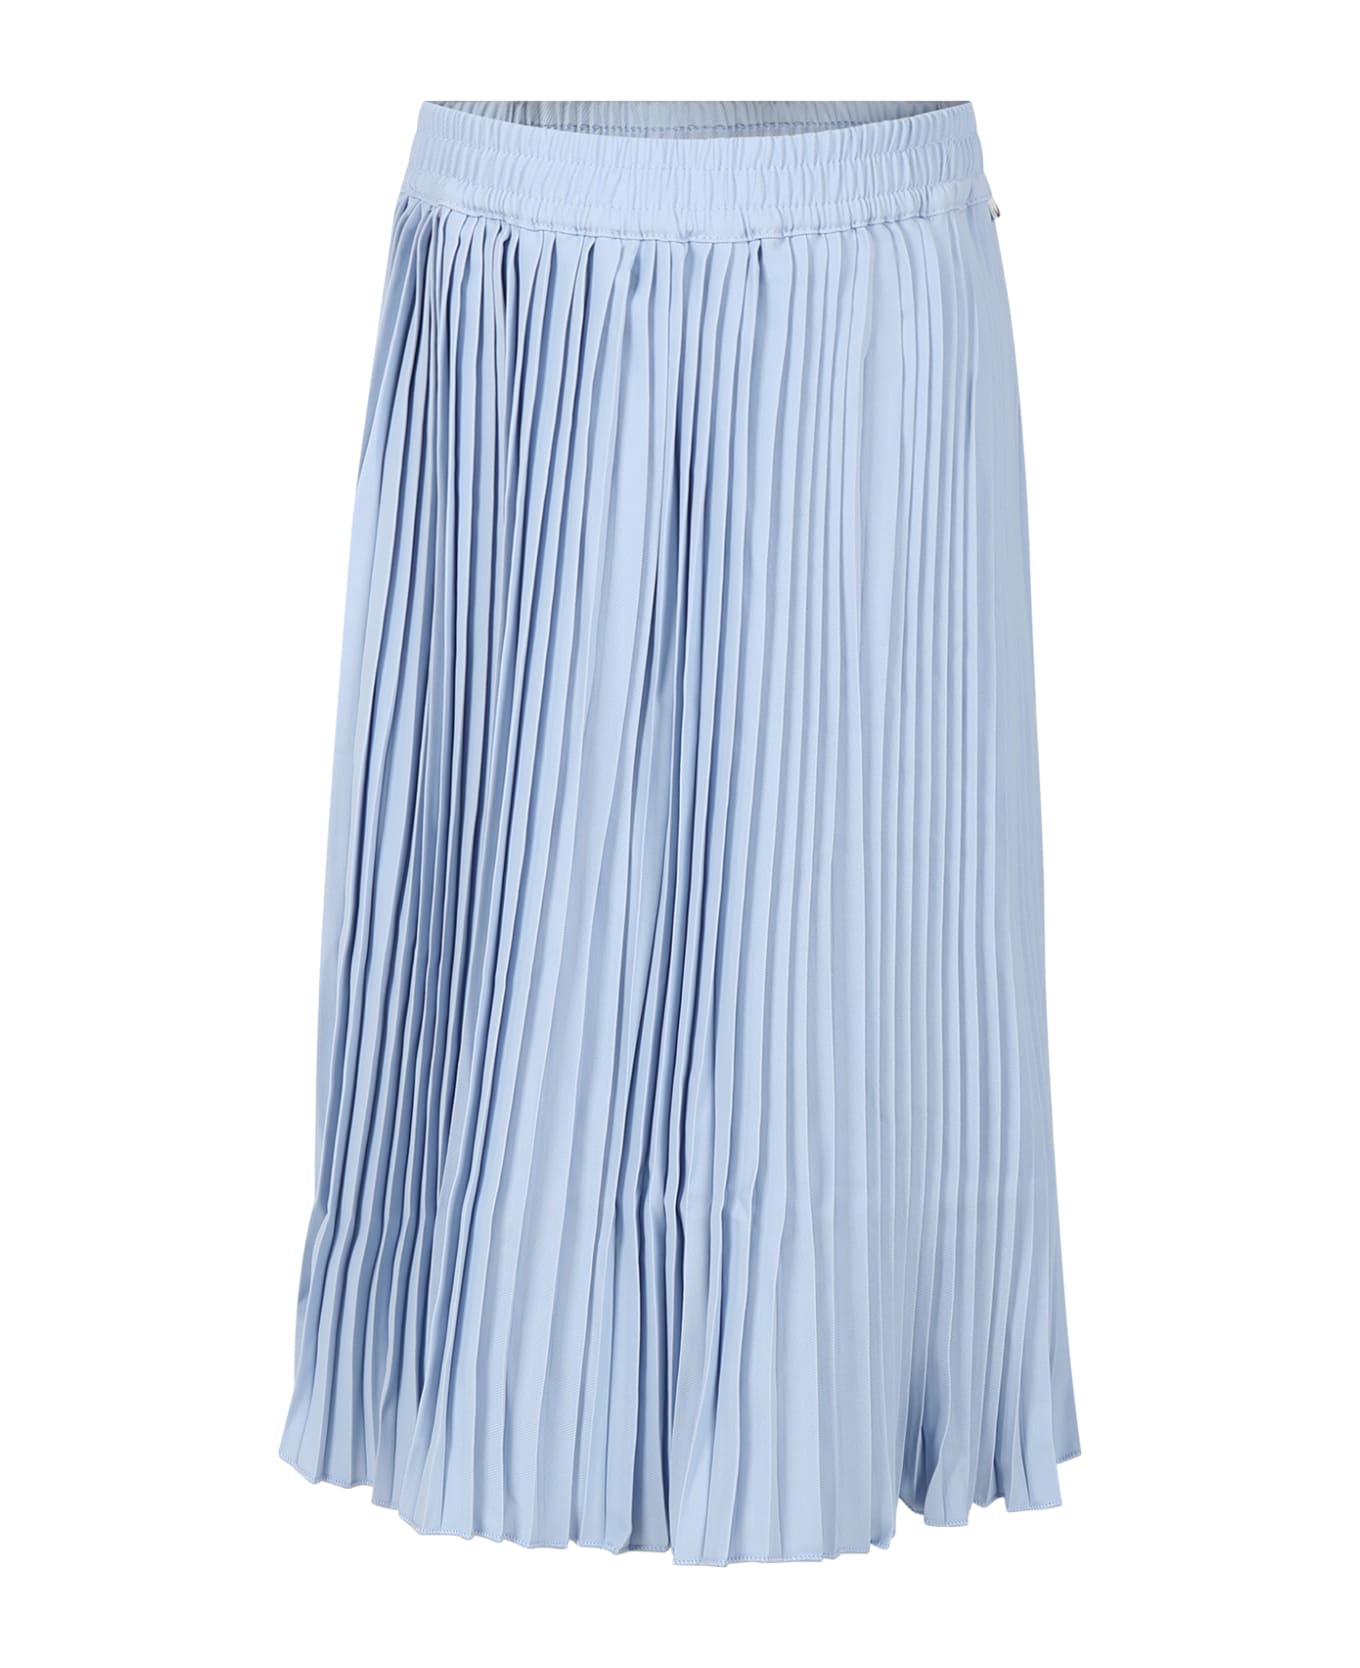 Molo Light Blue Casual Skirt Backa For Girl - Light Blue ボトムス